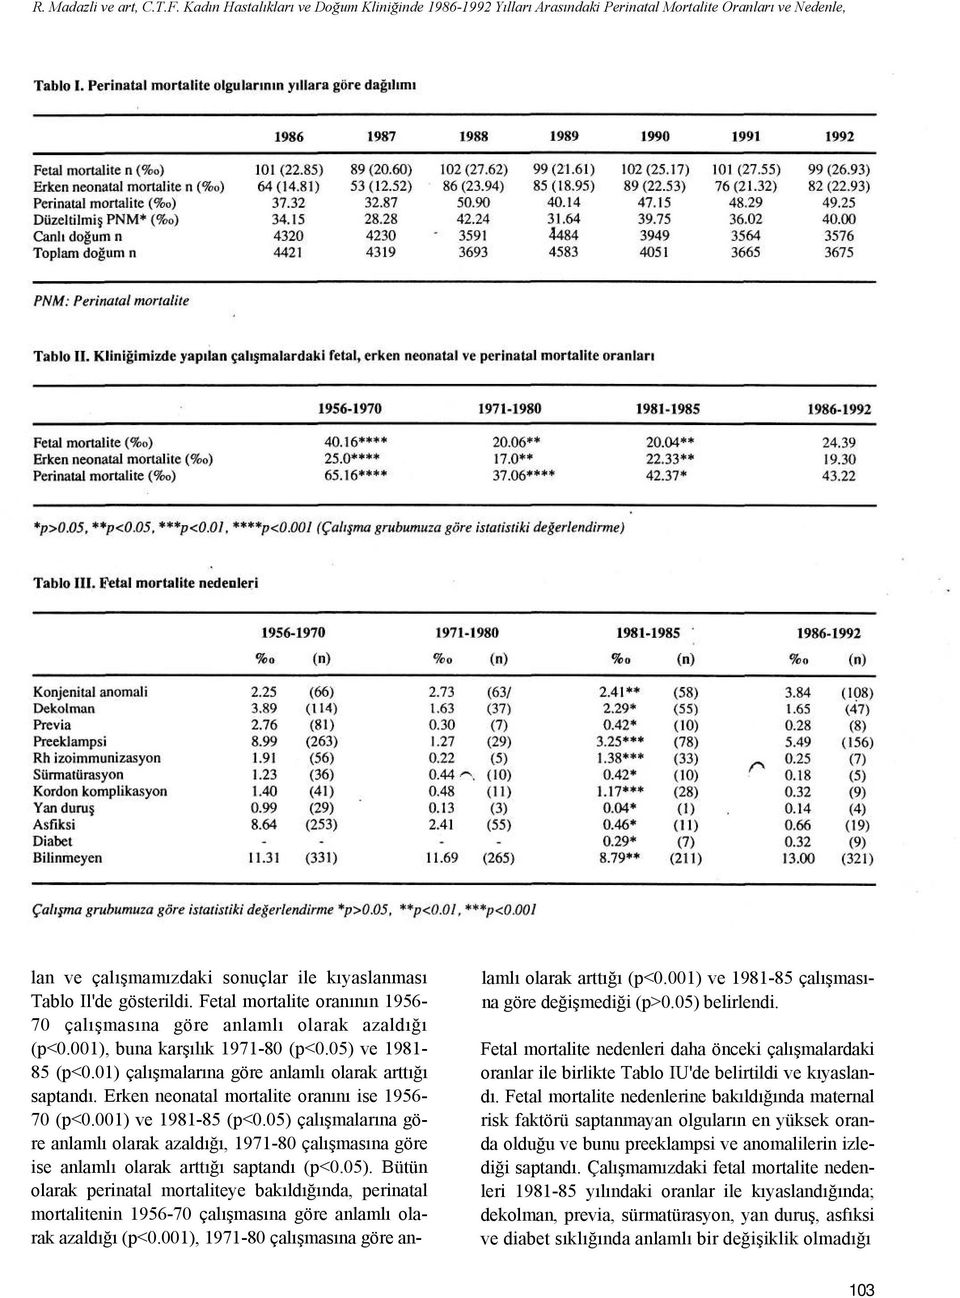 Fetal mortalite oranının 1956-70 çalışmasına göre anlamlı olarak azaldığı (p<0.001), buna karşılık 1971-80 (p<0.05) ve 1981-85 (p<0.01) çalışmalarına göre anlamlı olarak arttığı saptandı.